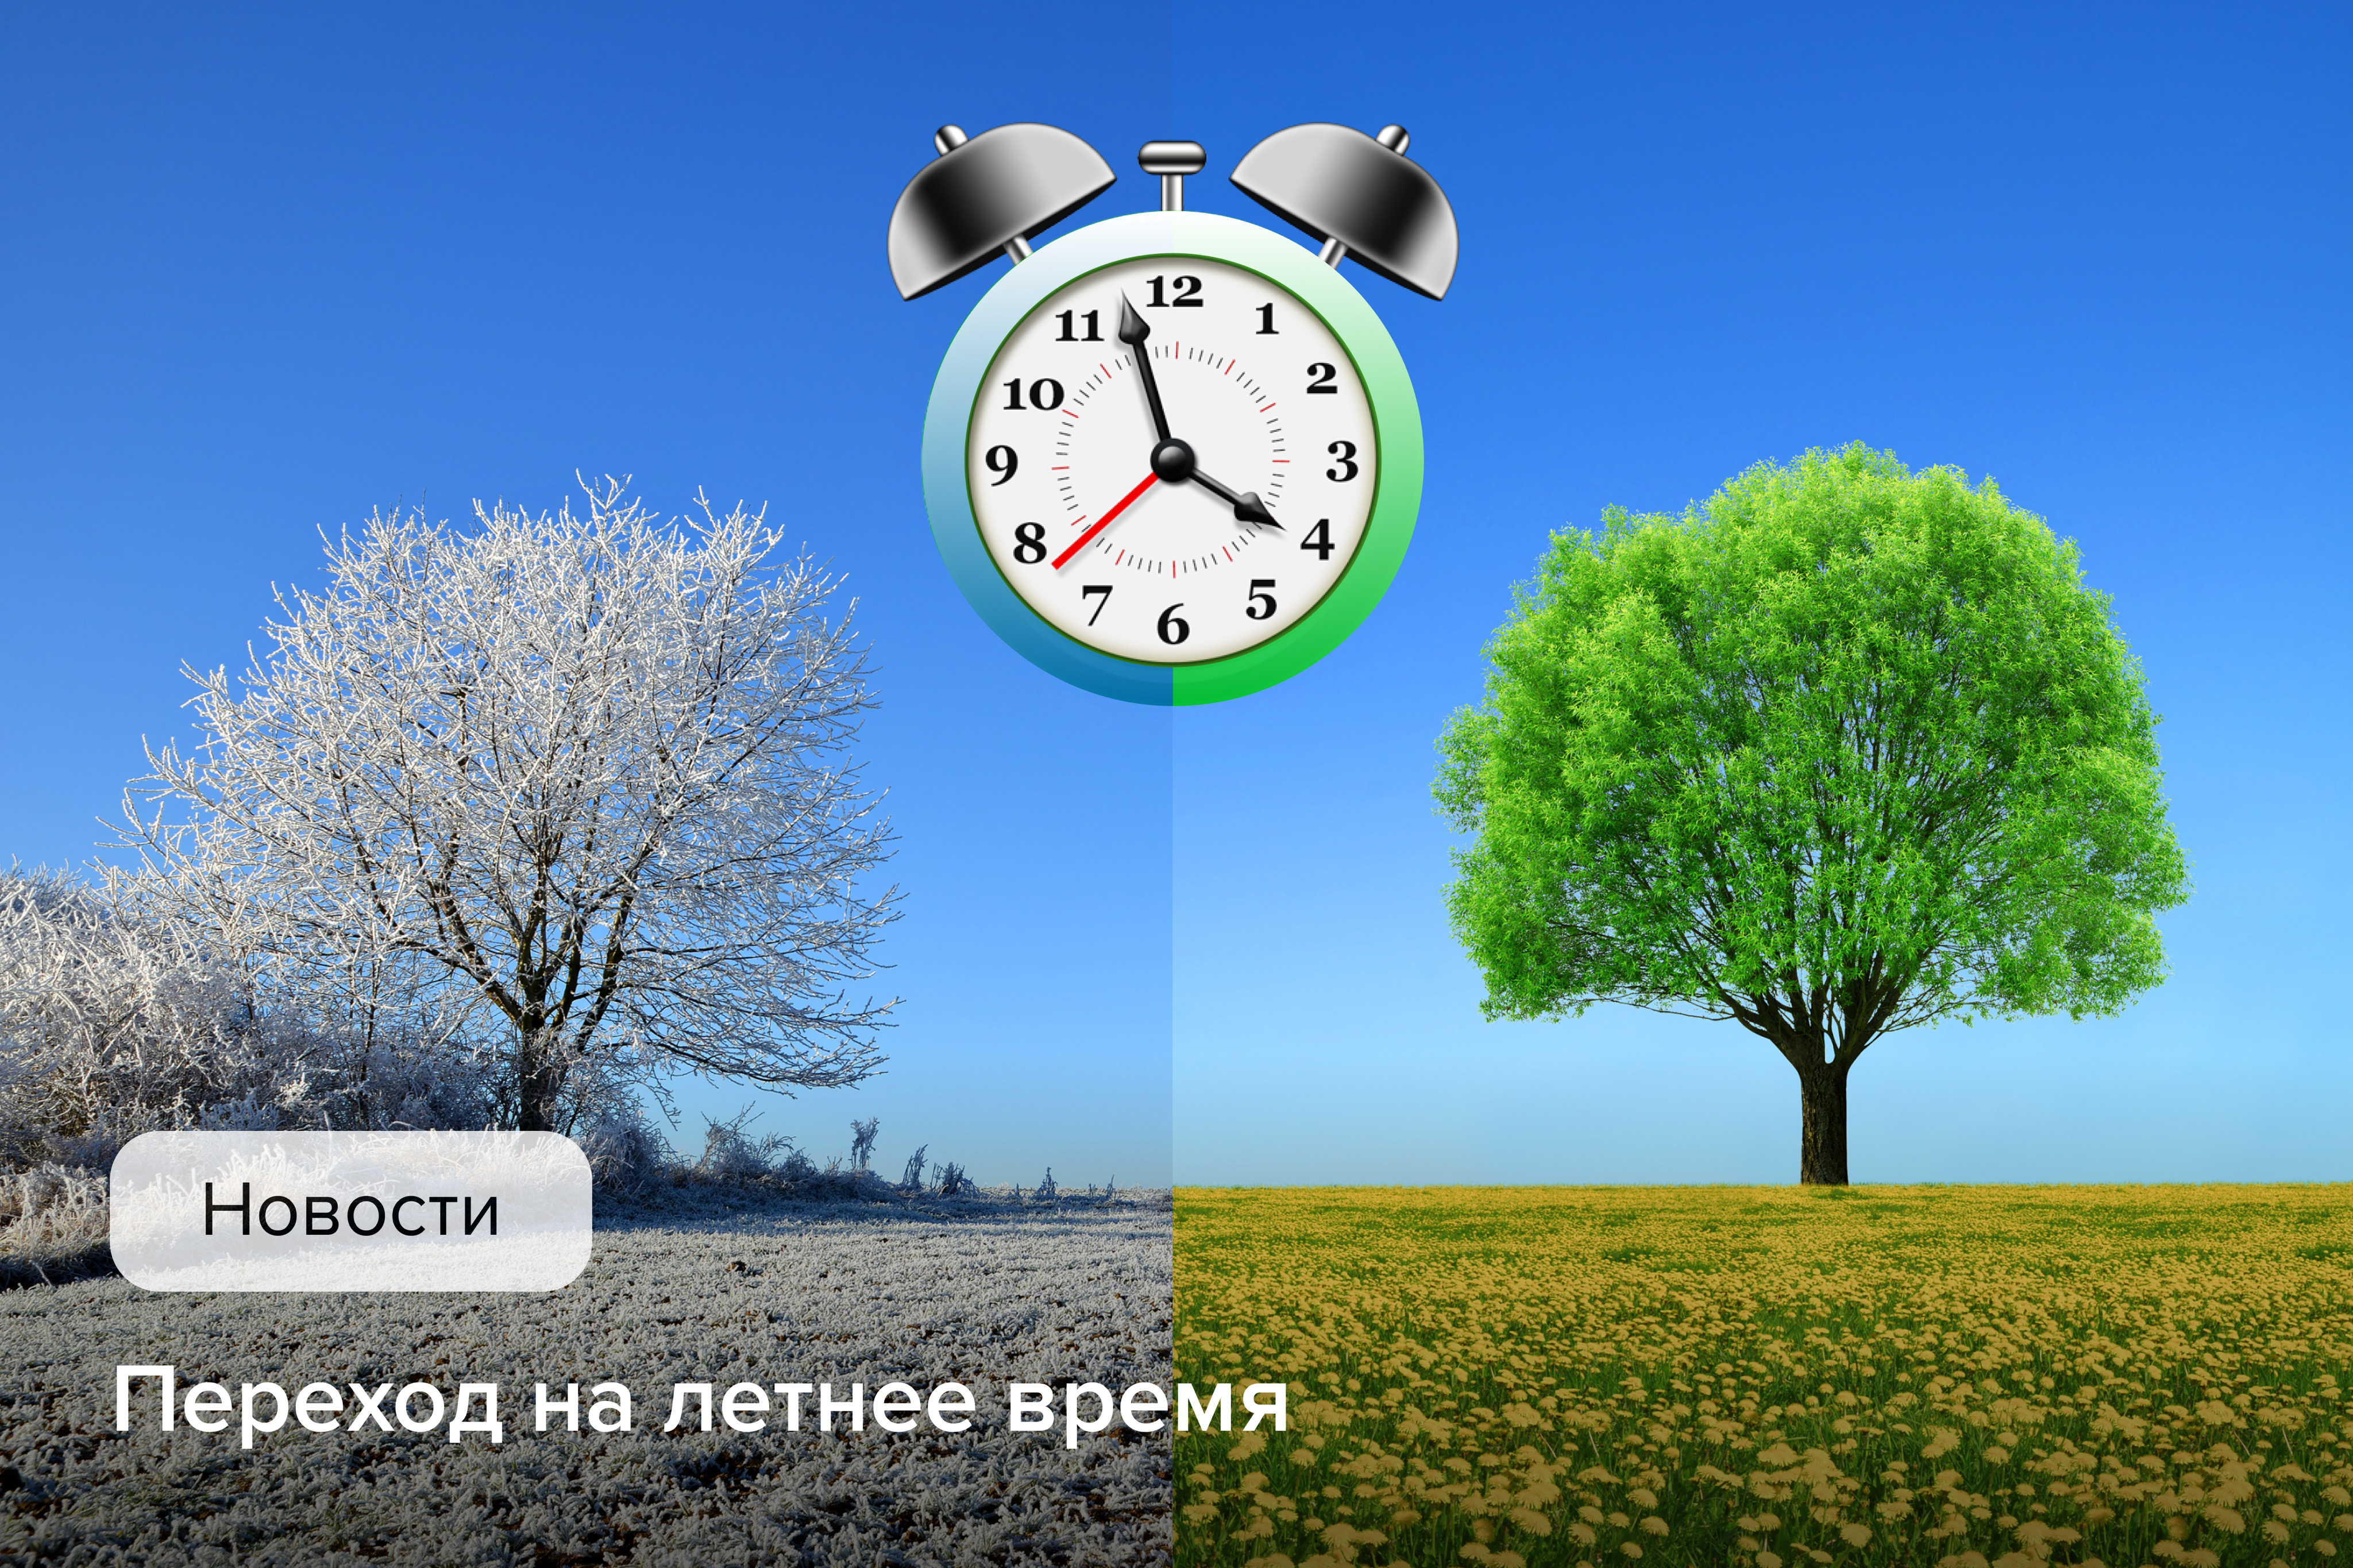 Когда украина переводит часы на летнее время. Перевод часов на летнее время.